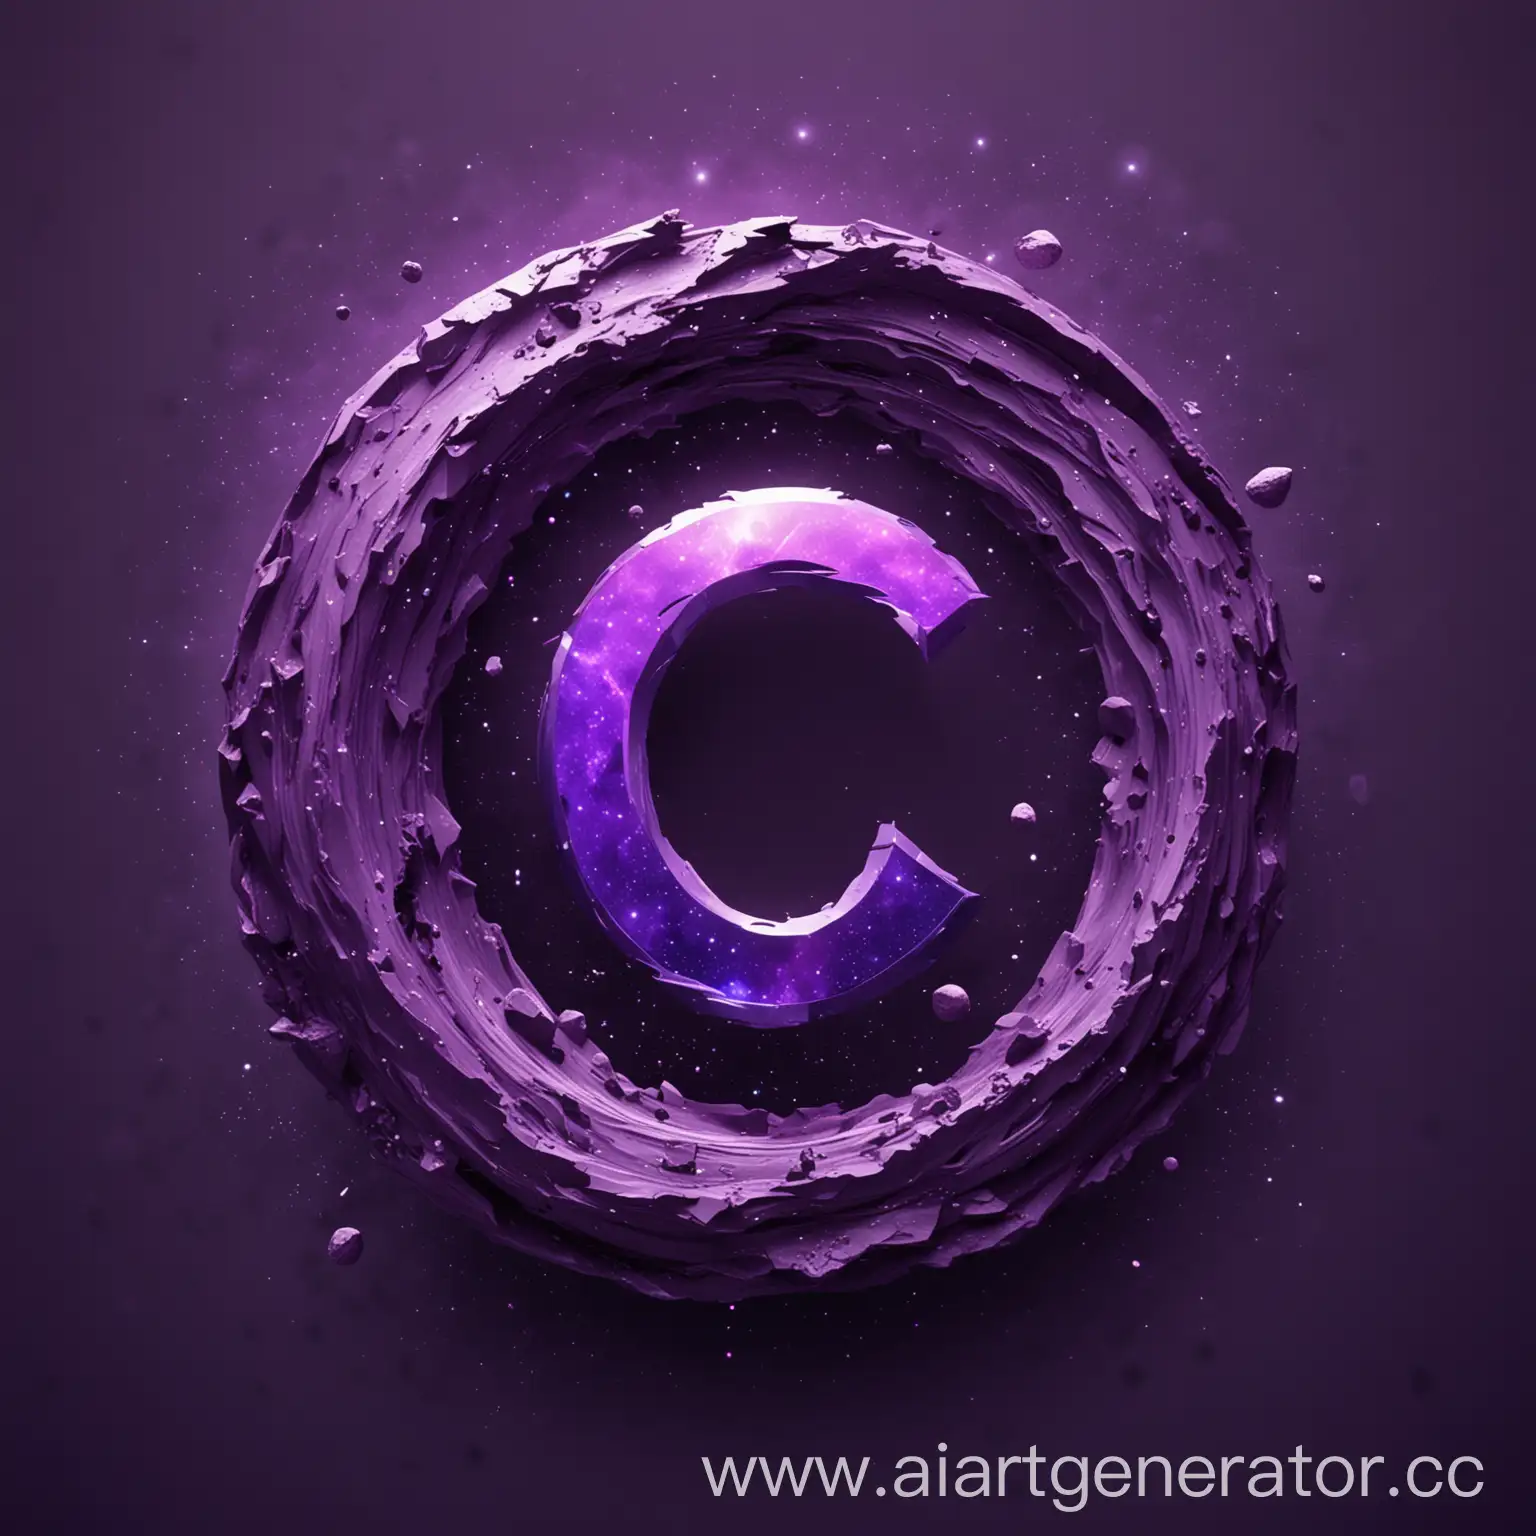 Сделай логотип для компании фиолетовый астероид где в центре буква C